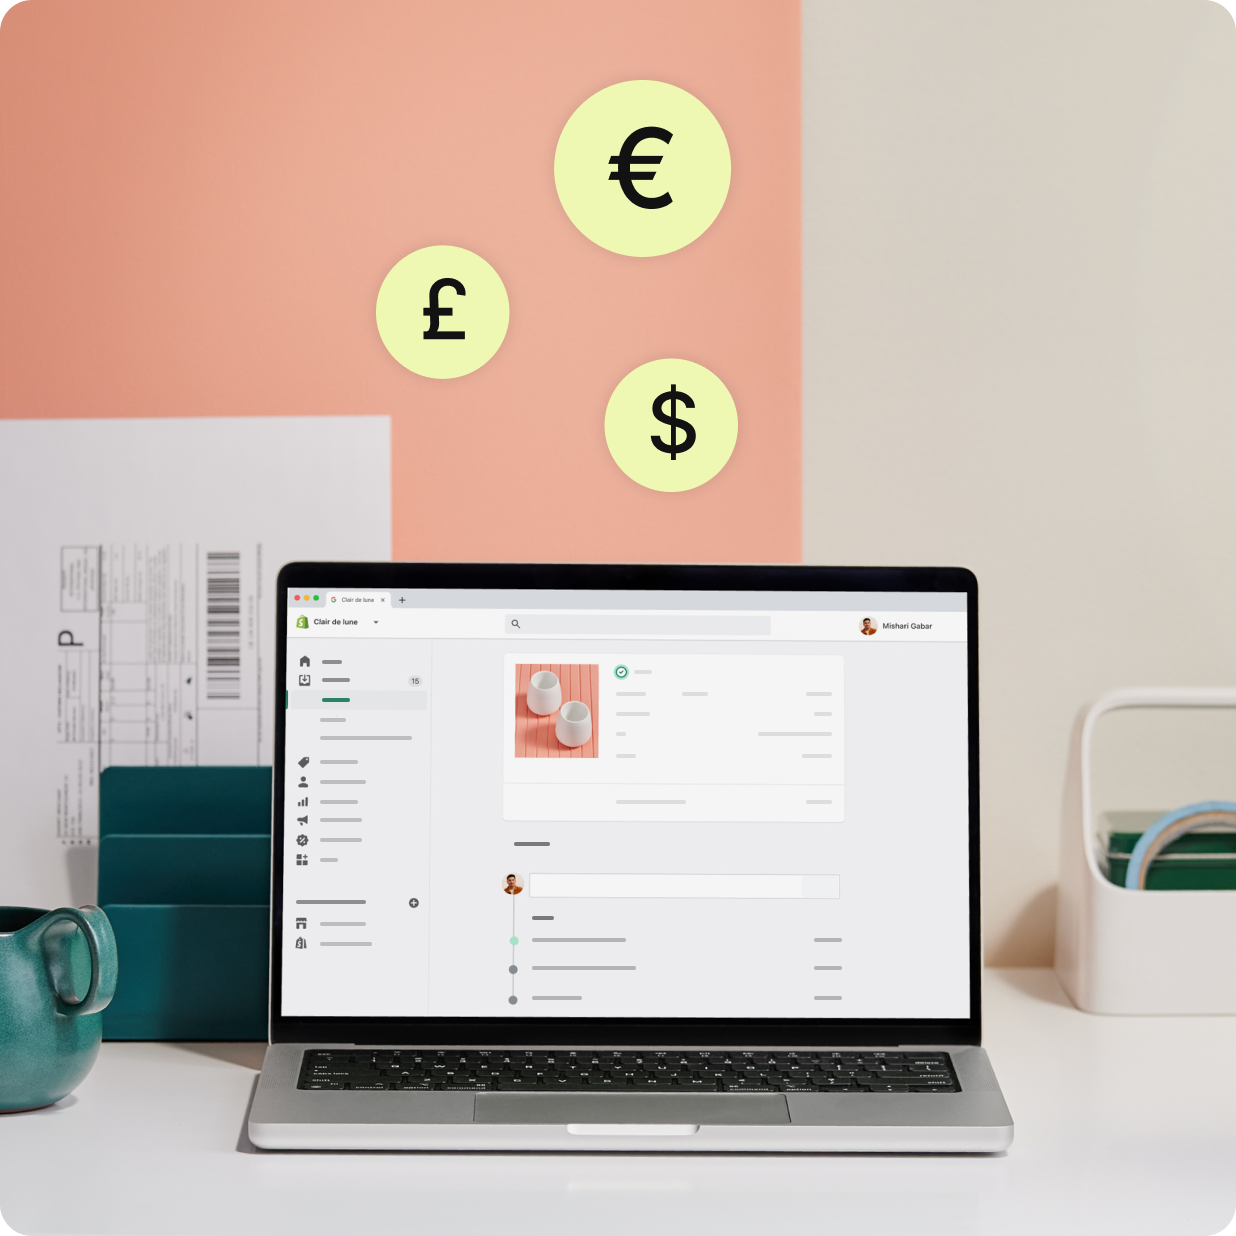 Bærbar computer, der viser ordrer og fakturaer fra Shopify Payments med flere valutasymboler